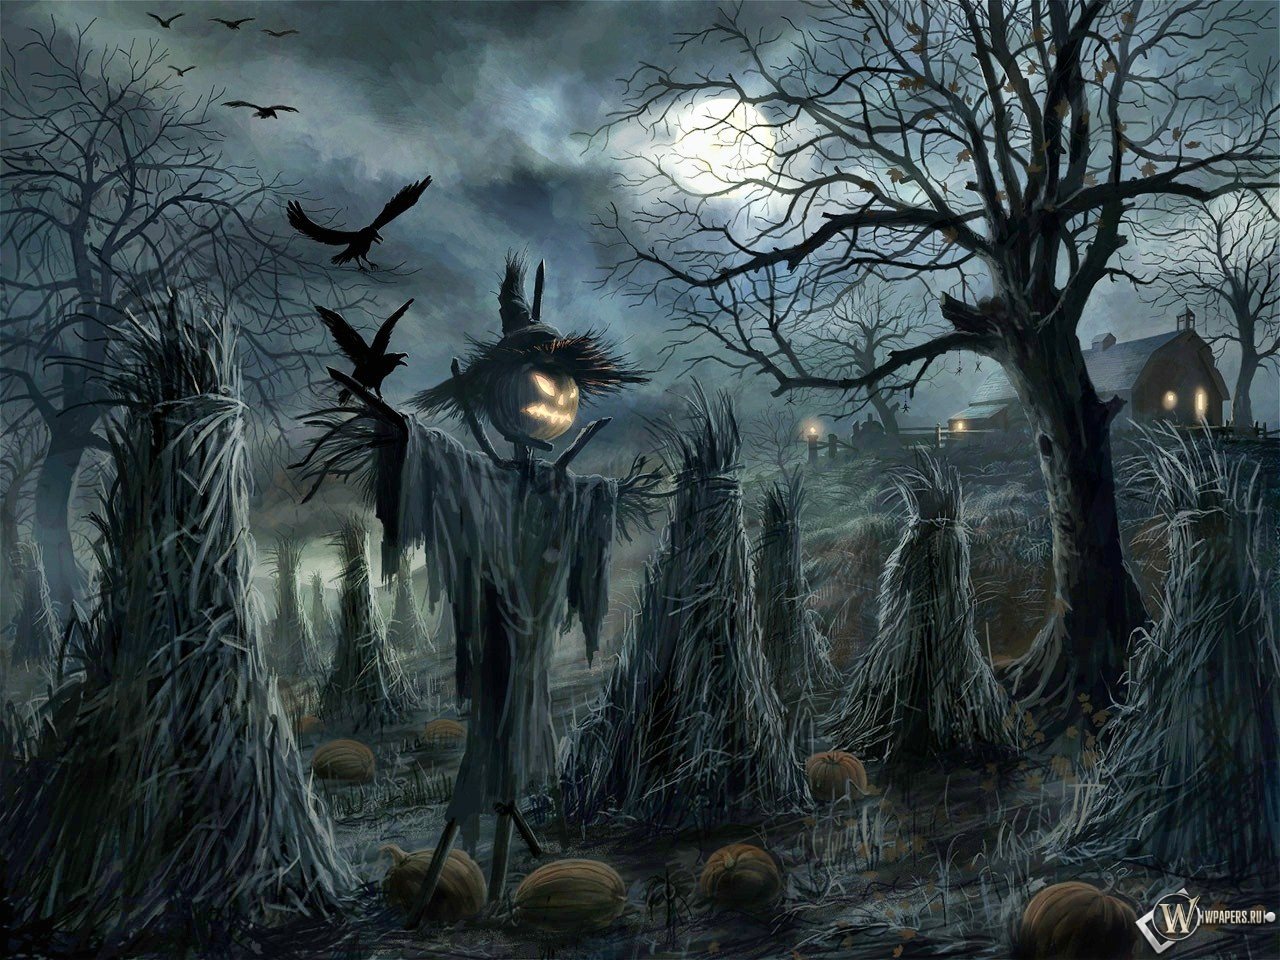 fond d'écran effrayant halloween,ténèbres,arbre,personnage fictif,oeuvre de cg,compositing numérique